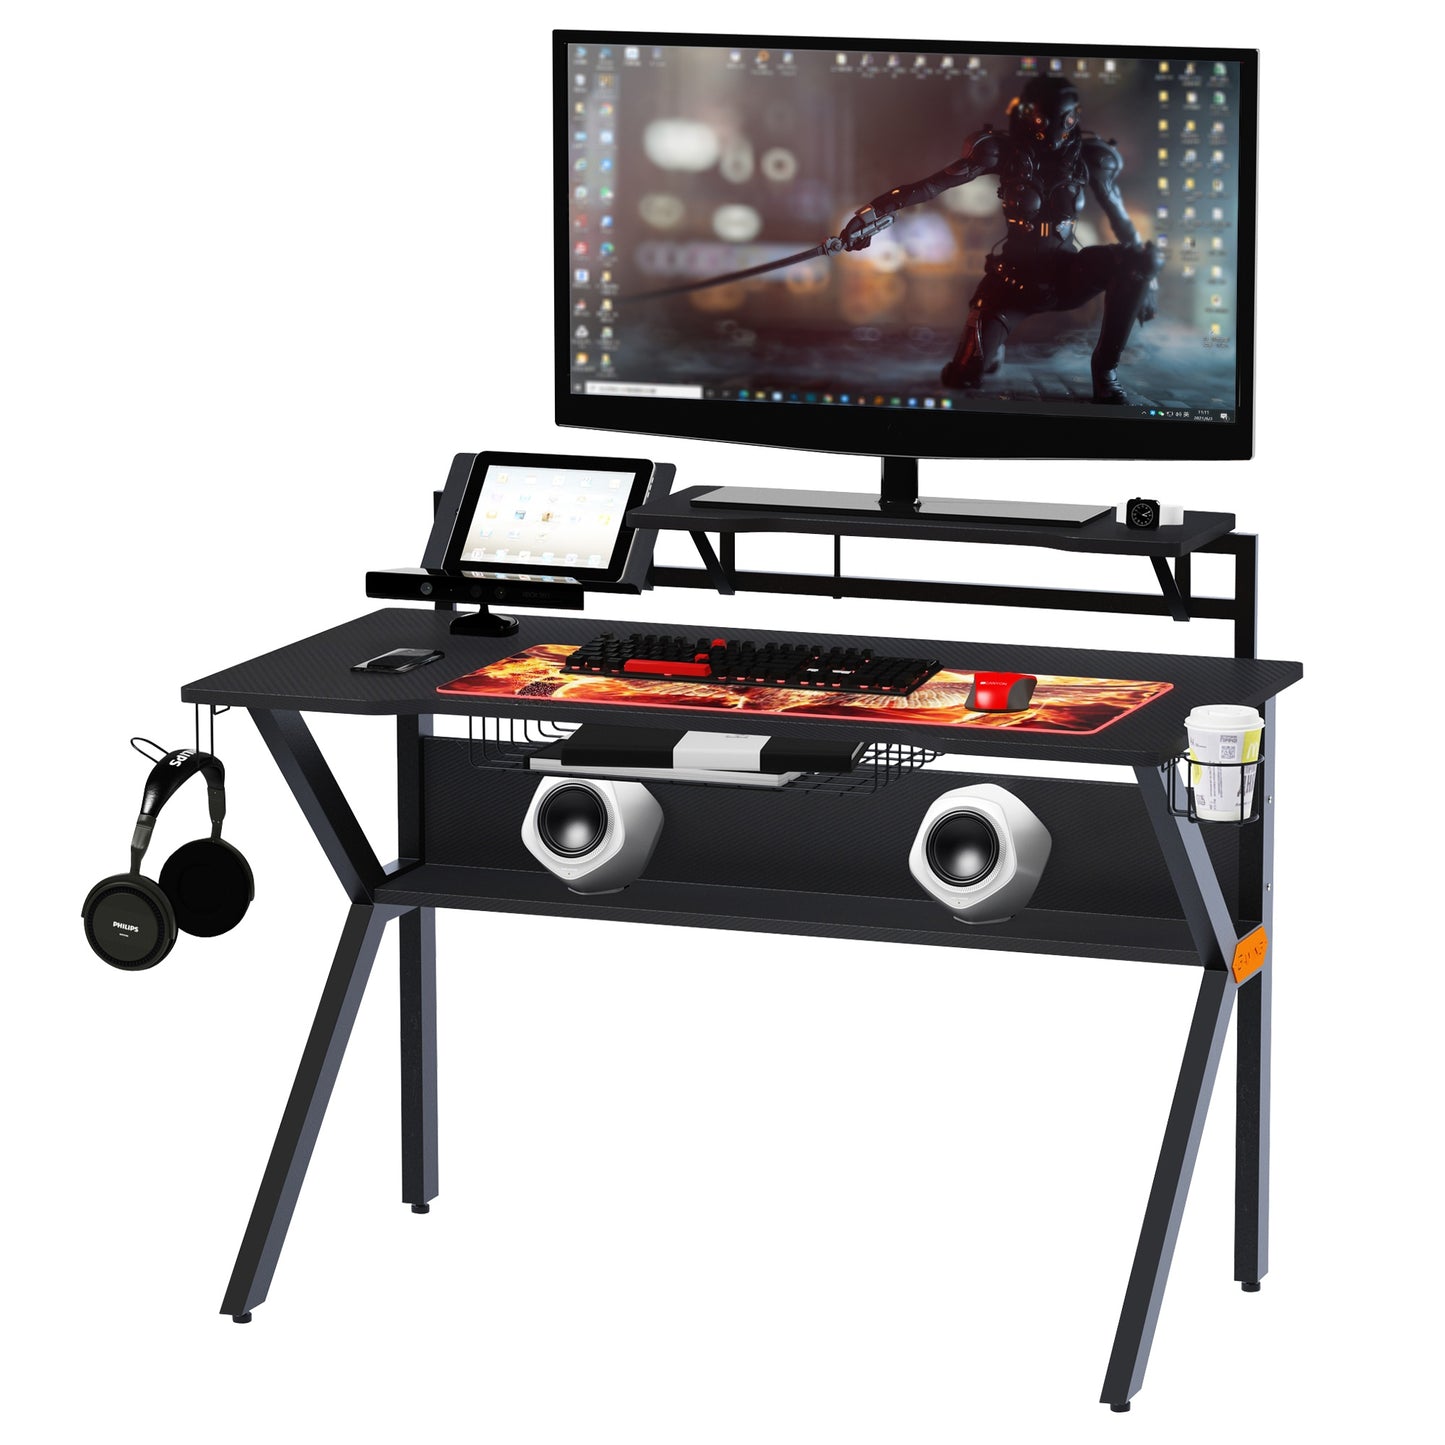 HOMCOM Metal Frame Gaming Computer Desk w/Cup Holder Headphone Hook & Cable Basket Black